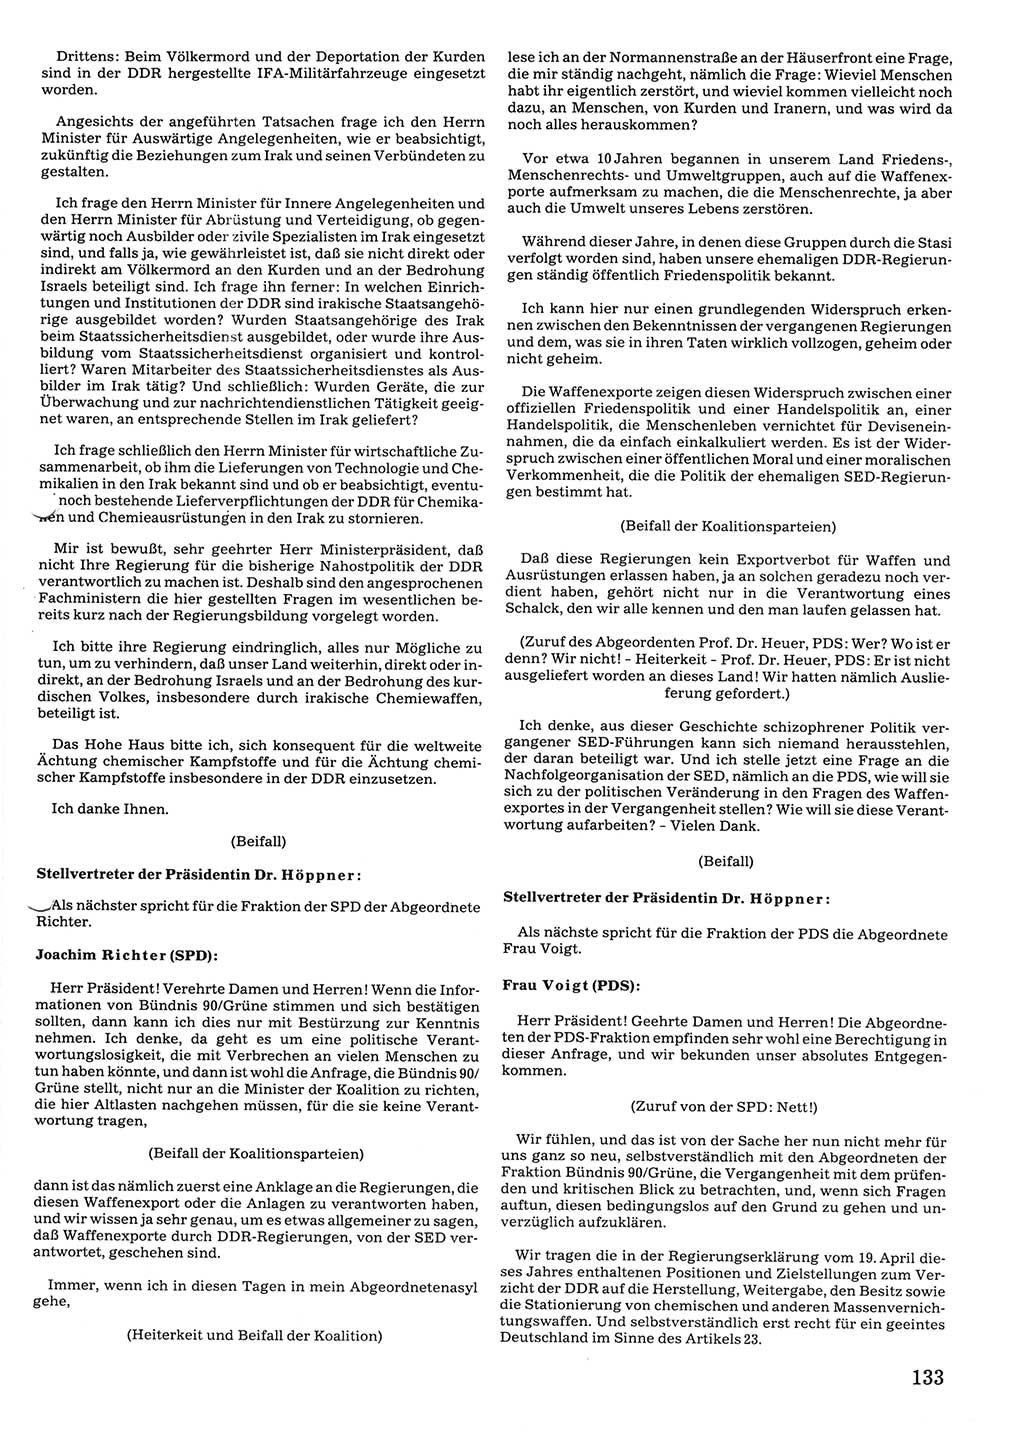 Tagungen der Volkskammer (VK) der Deutschen Demokratischen Republik (DDR), 10. Wahlperiode 1990, Seite 133 (VK. DDR 10. WP. 1990, Prot. Tg. 1-38, 5.4.-2.10.1990, S. 133)